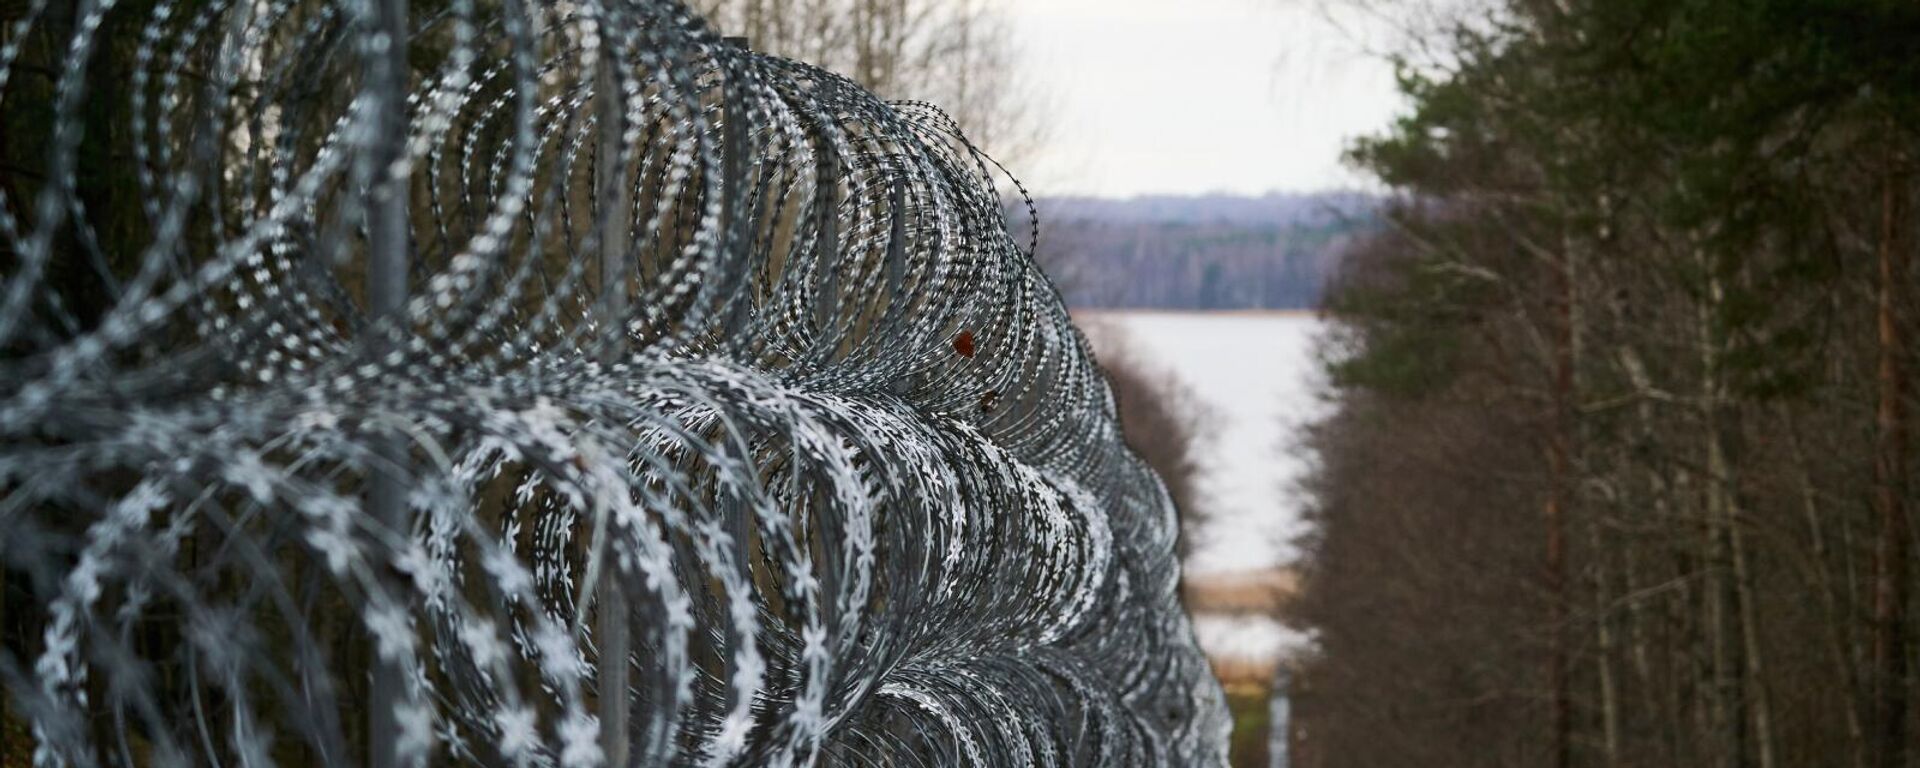 Забор из колючей проволоки на латвийско-белорусской границе  - Sputnik Латвия, 1920, 19.11.2021